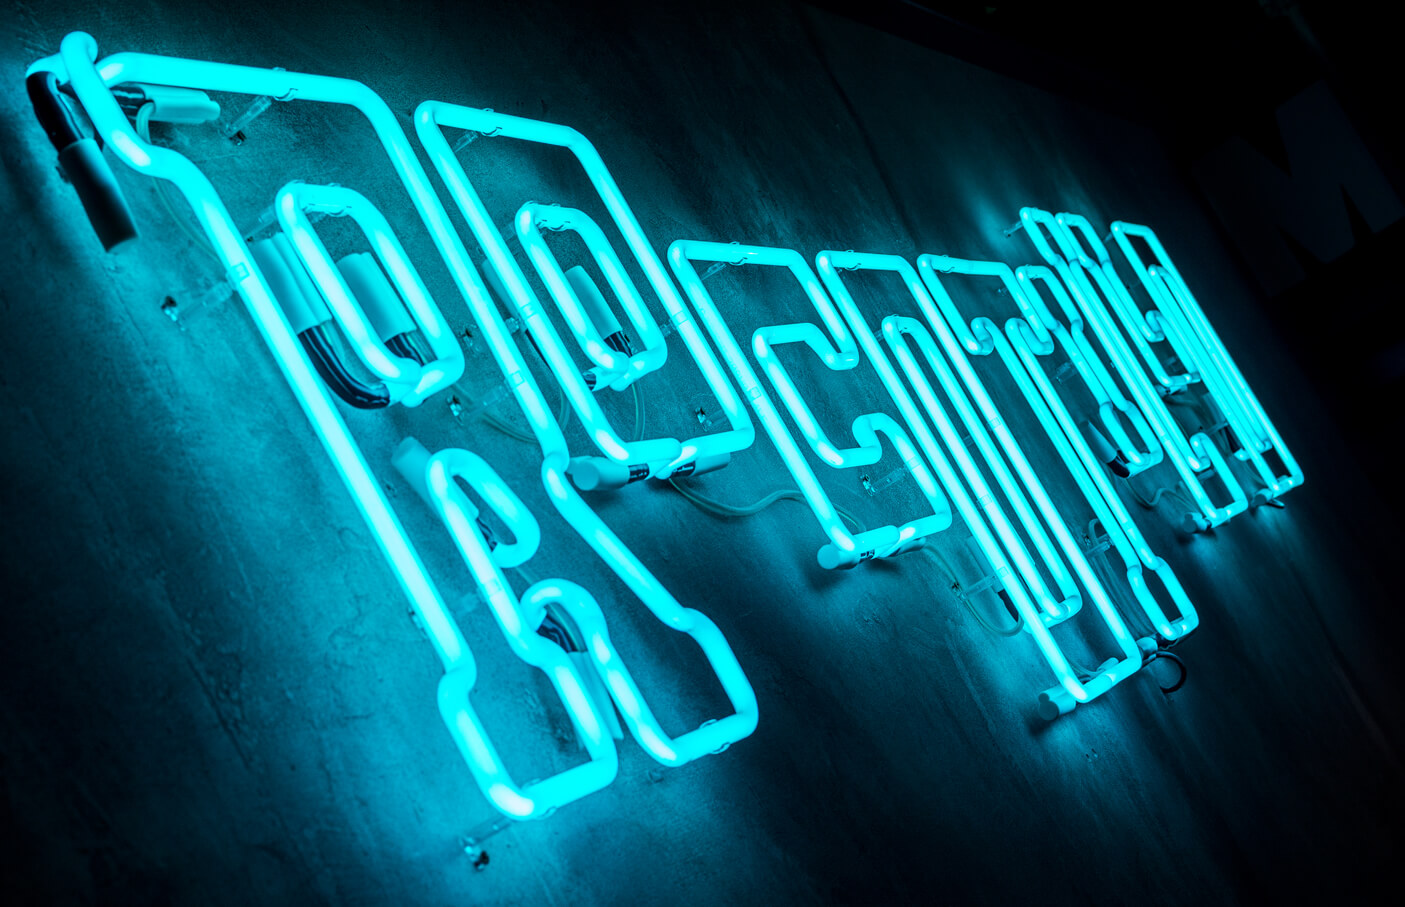 Rocotilli - neon-rocotillo-neon-an-der-Wand-innen-restaurant-neon-an-der-Wand-neon-über-Tische-neon-beleuchtet-neon-an-der-Wand-beton-neon-glas-neon-logo-schild